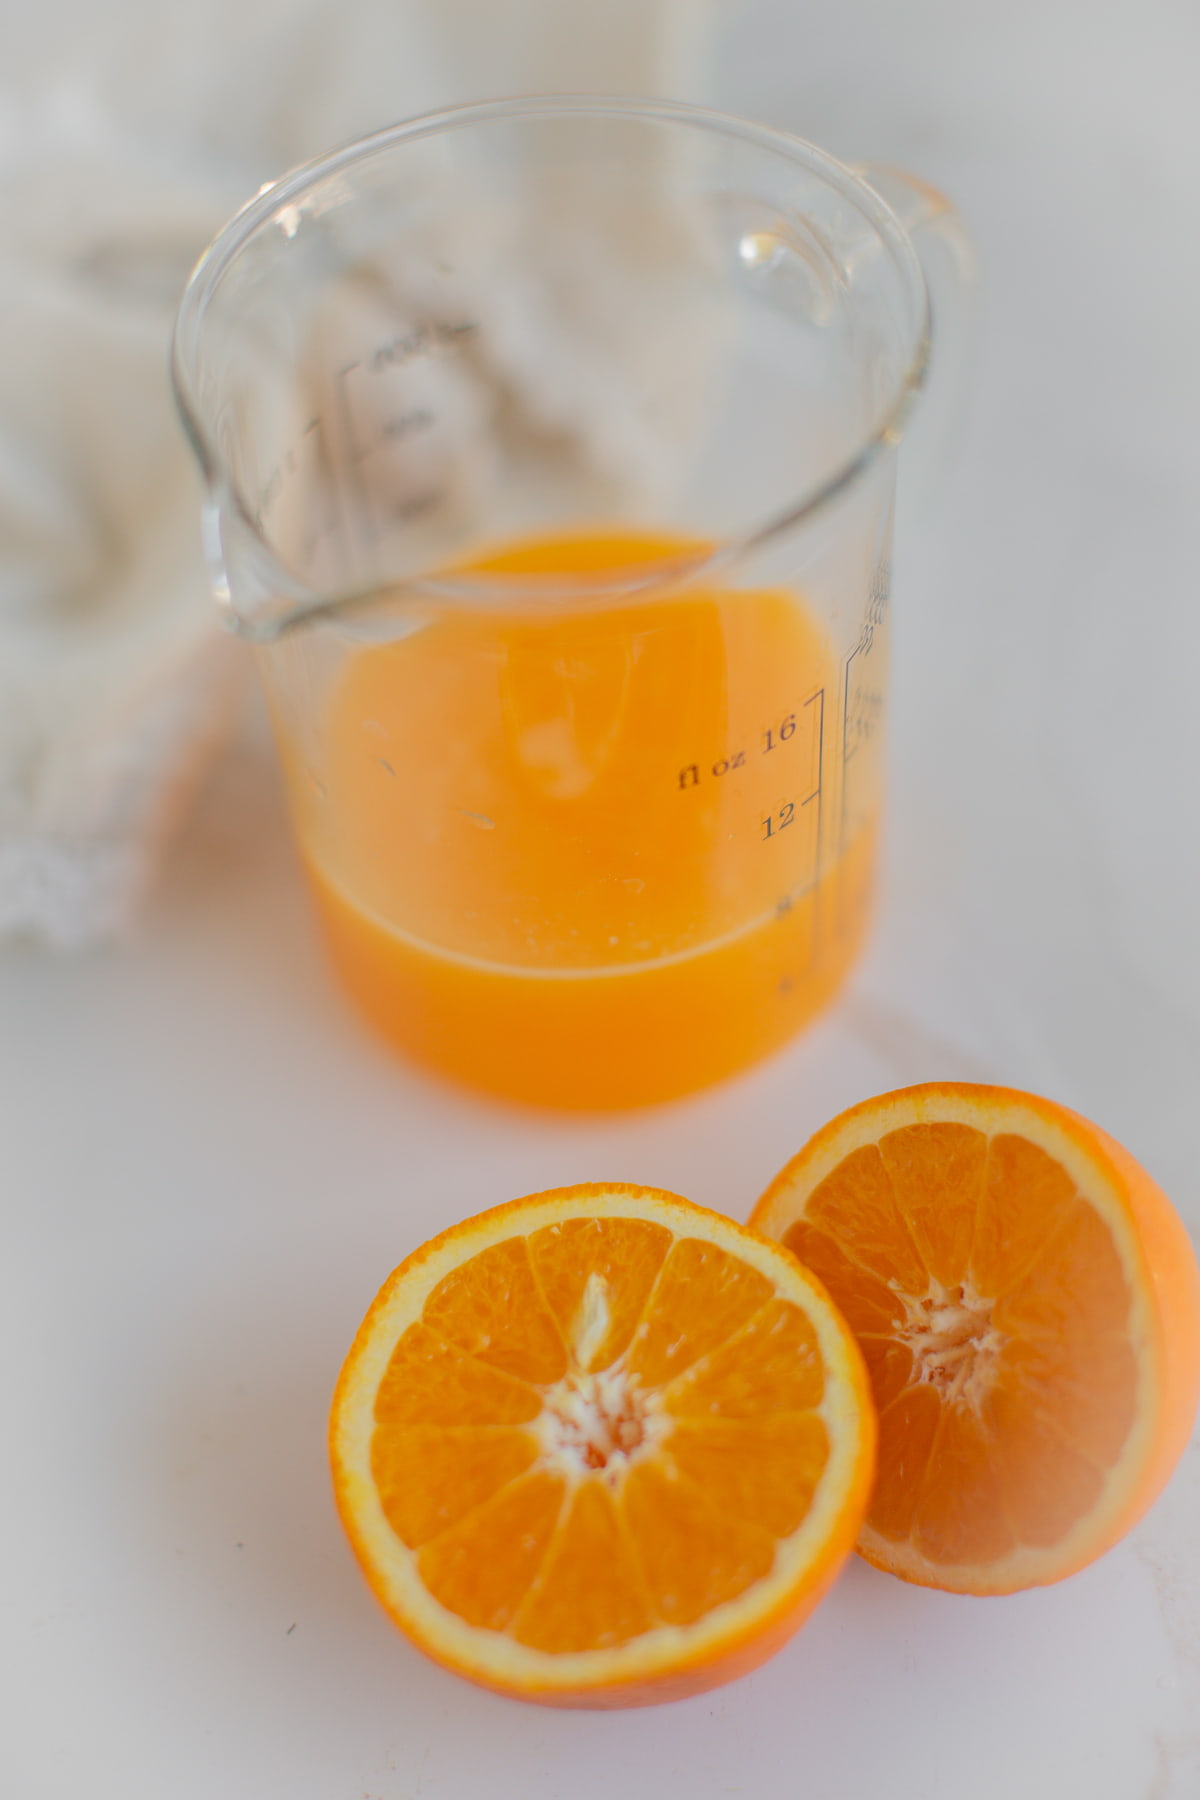 An orange sliced in half next to a pitcher of fresh orange juice.